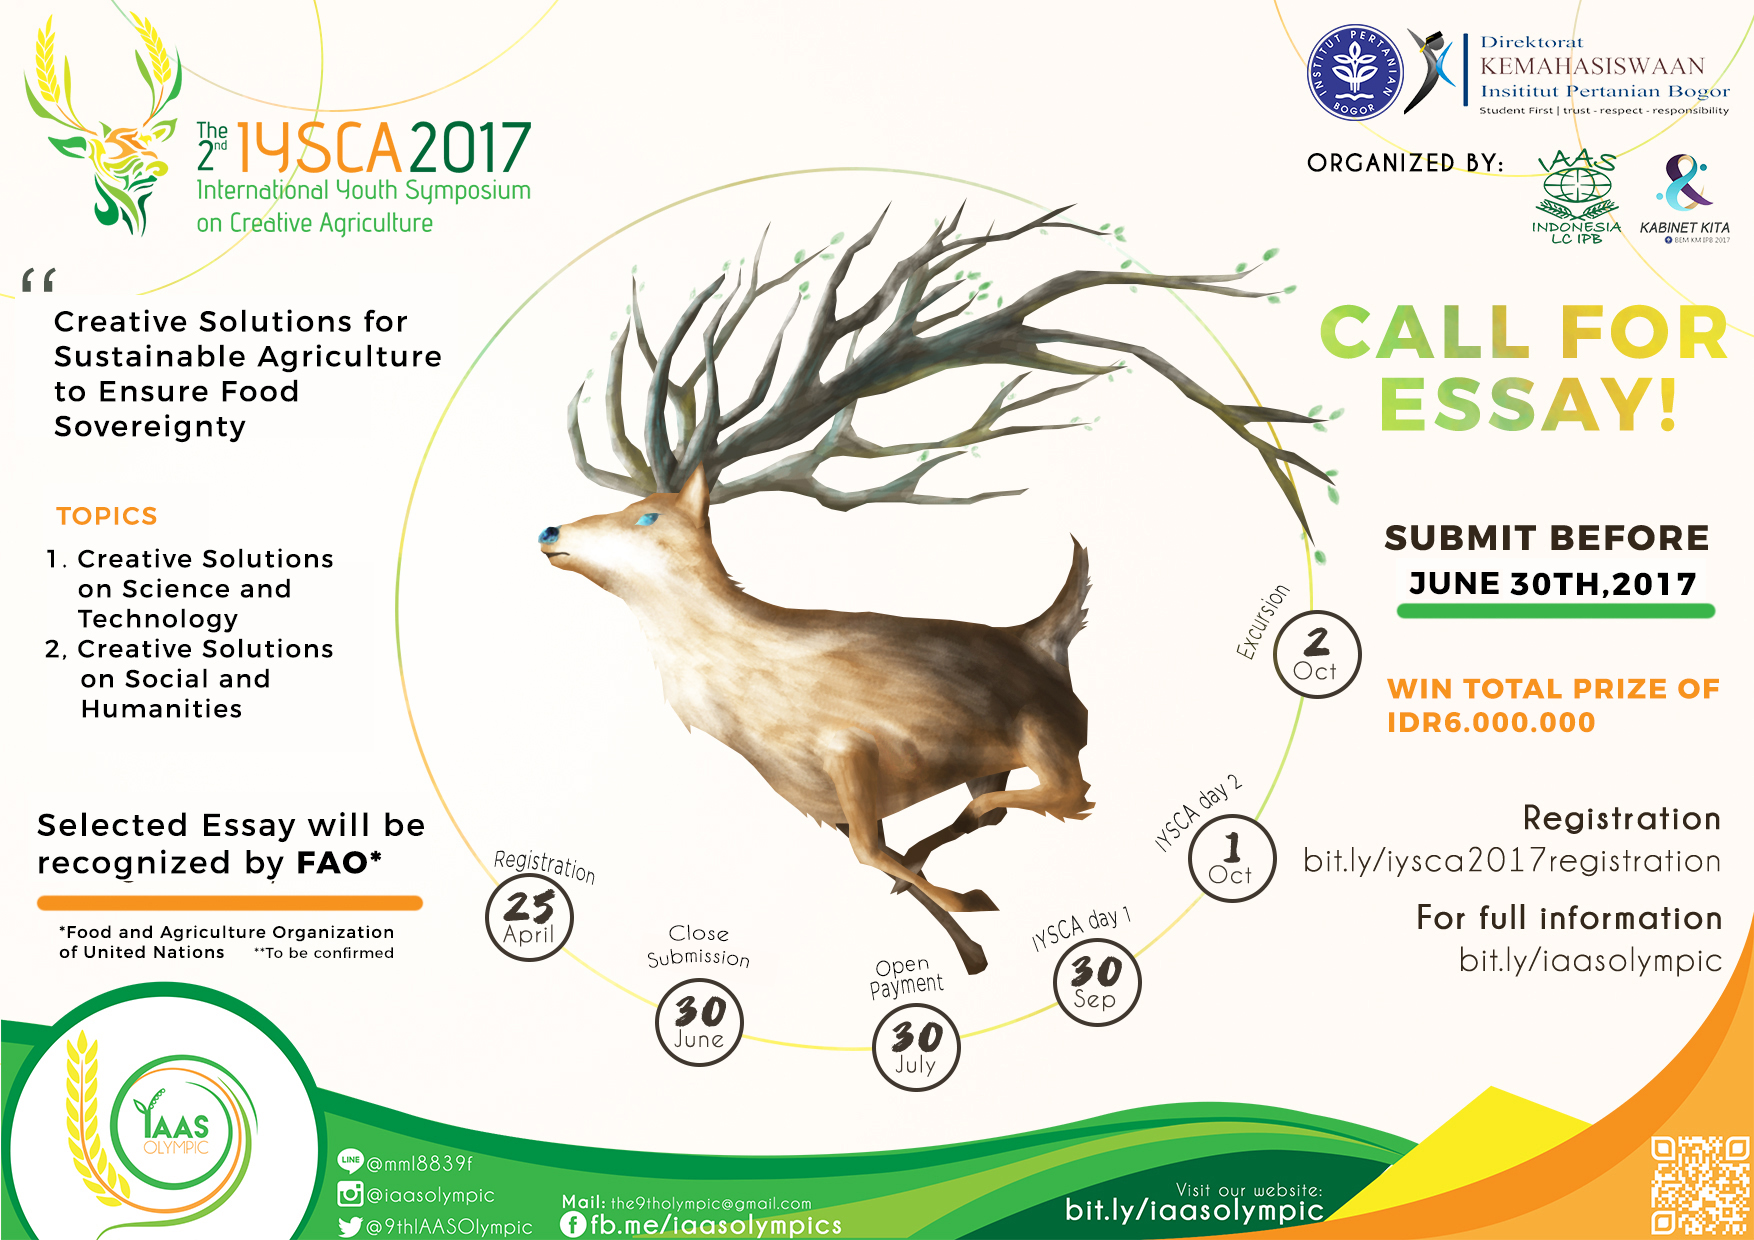 International Youth Symposium on Creative Agriculture (IYSCA) 2017, Bogor, Jawa Barat, Indonesia